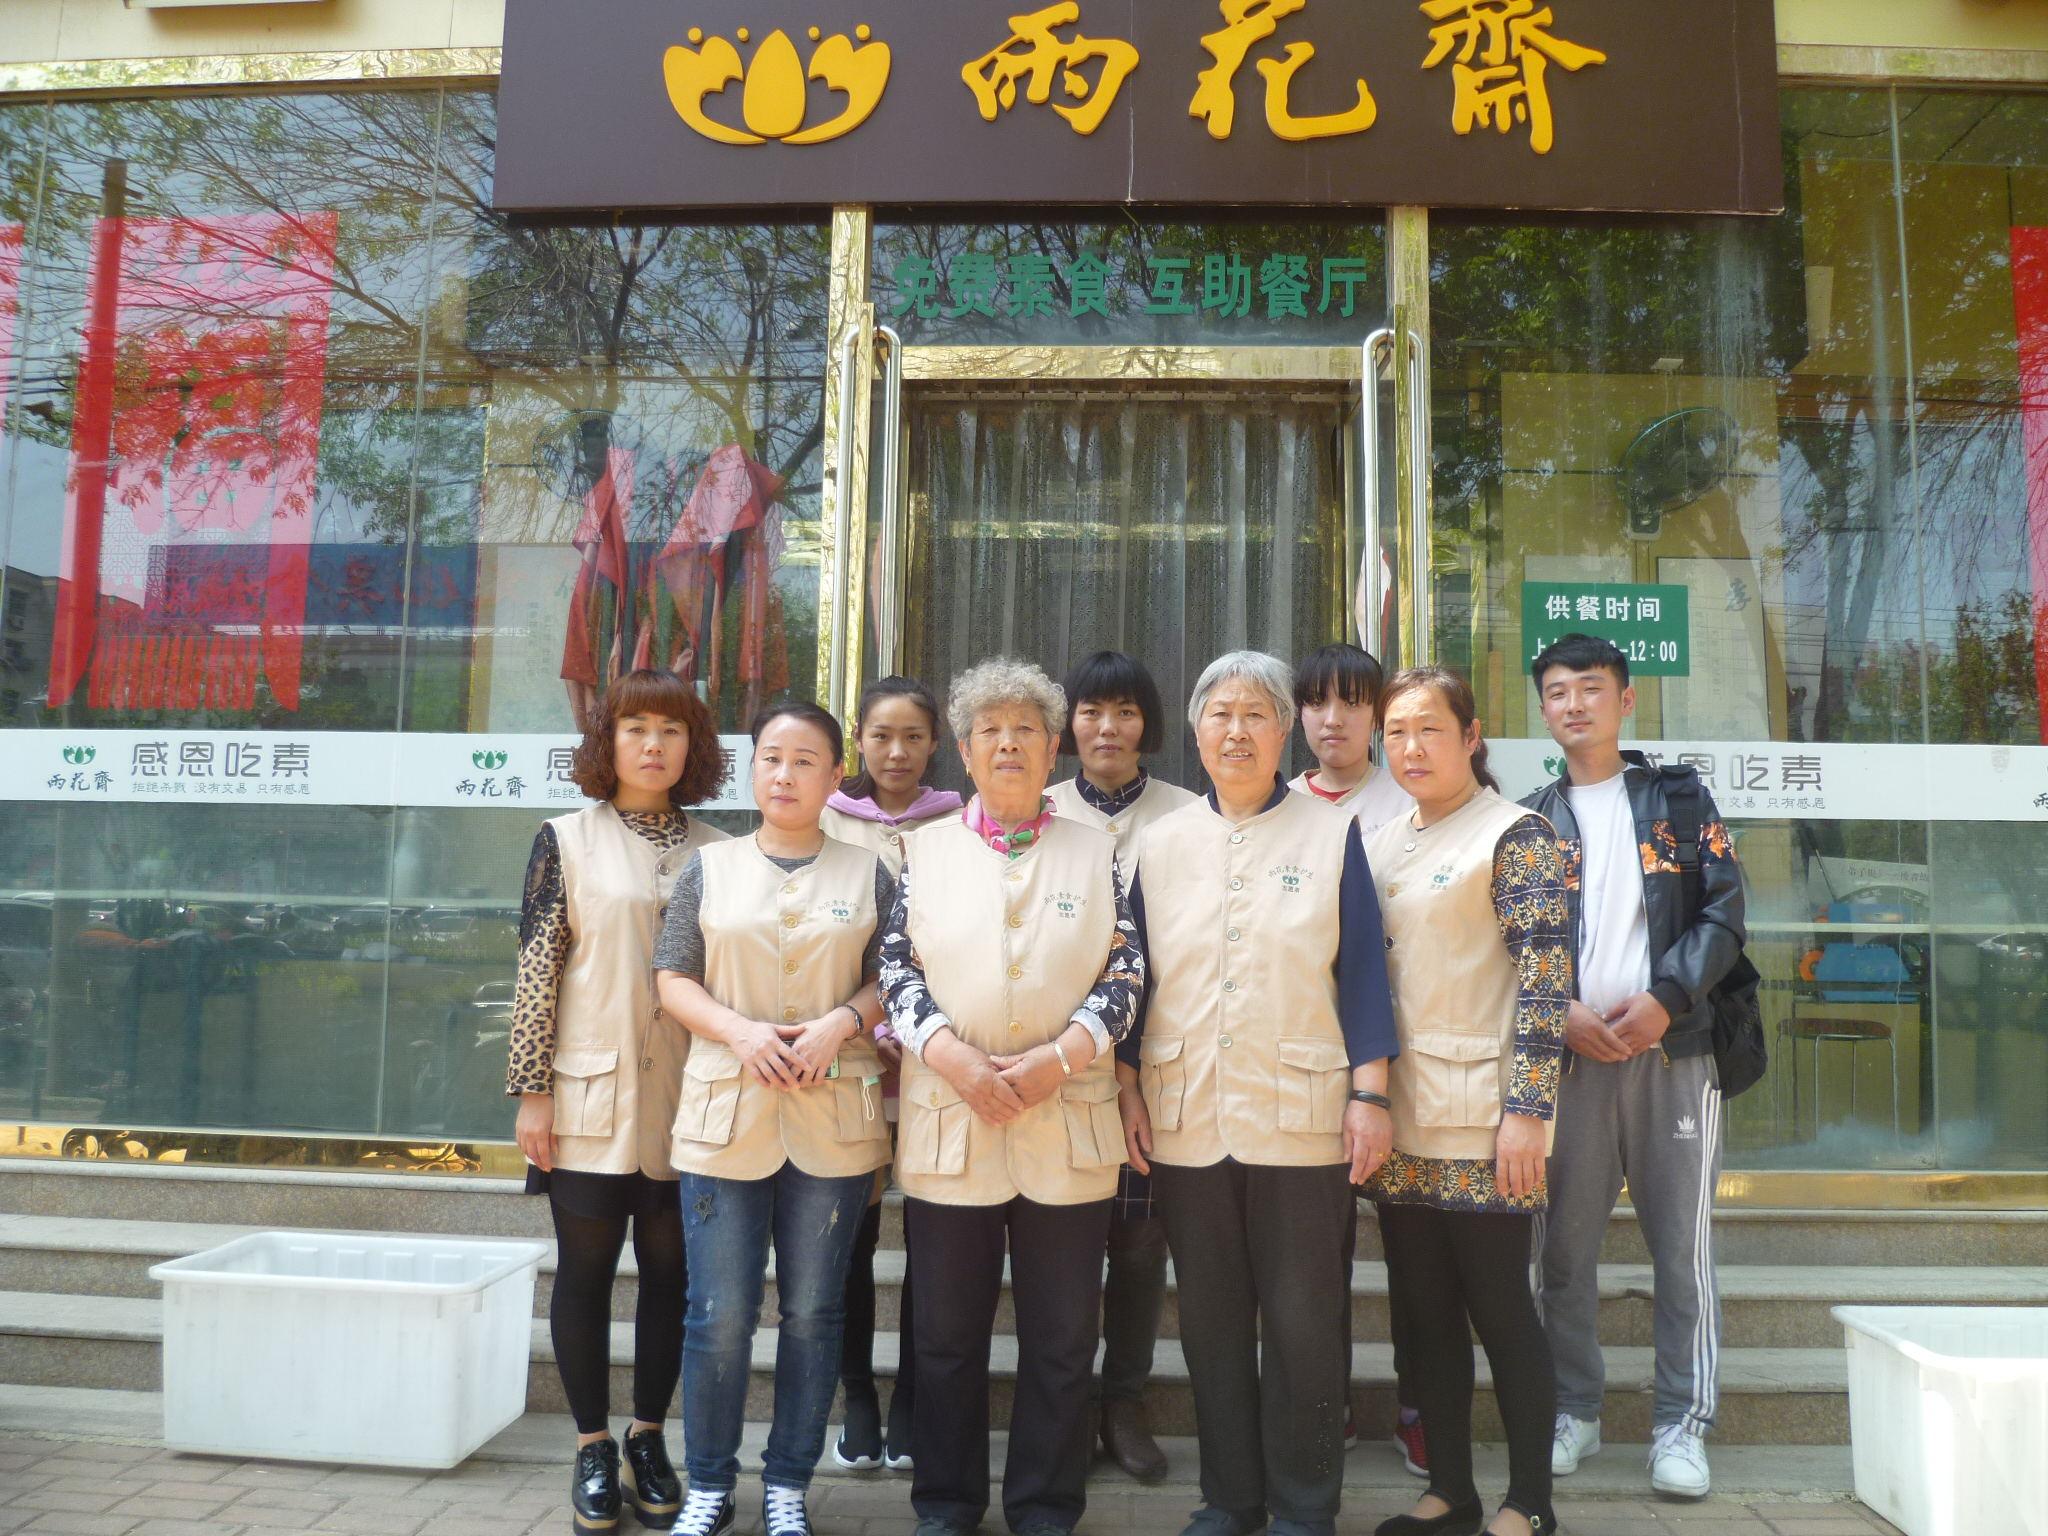 沧州雨花斋面向全体父老百姓的免费素食餐厅弘扬中华优秀传统文化